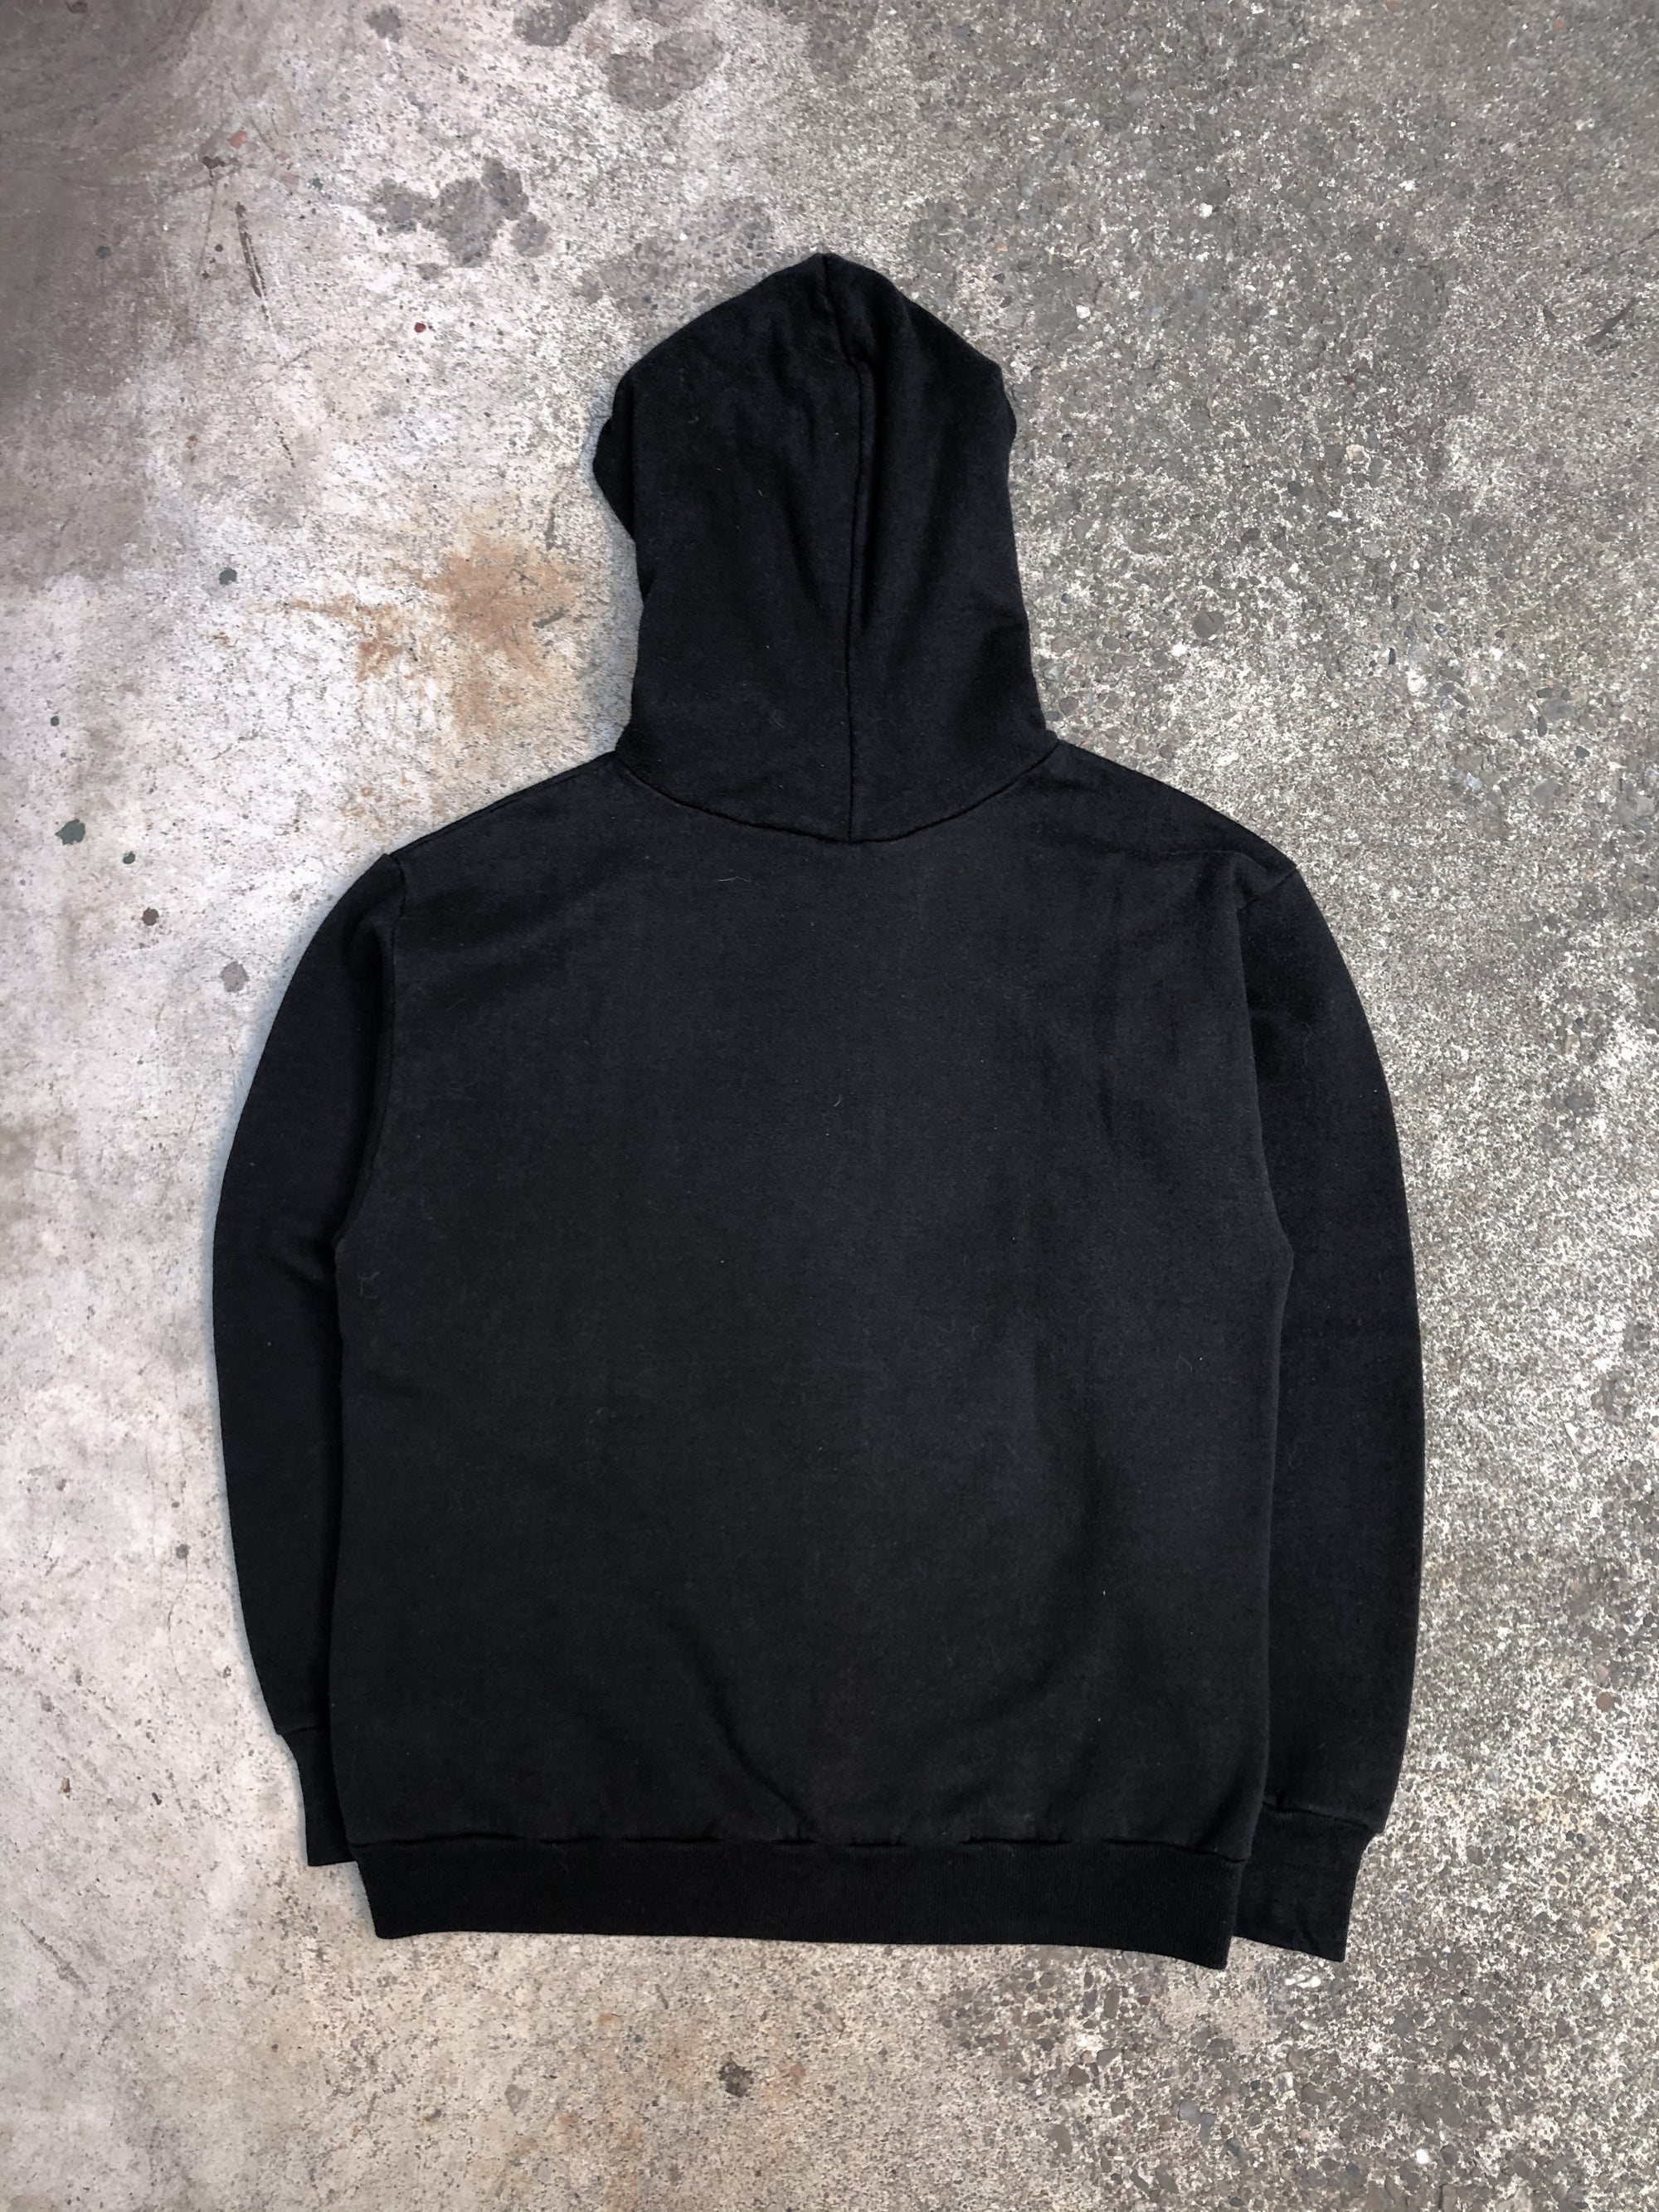 1980s Black Blank Hoodie Sweatshirt (S)